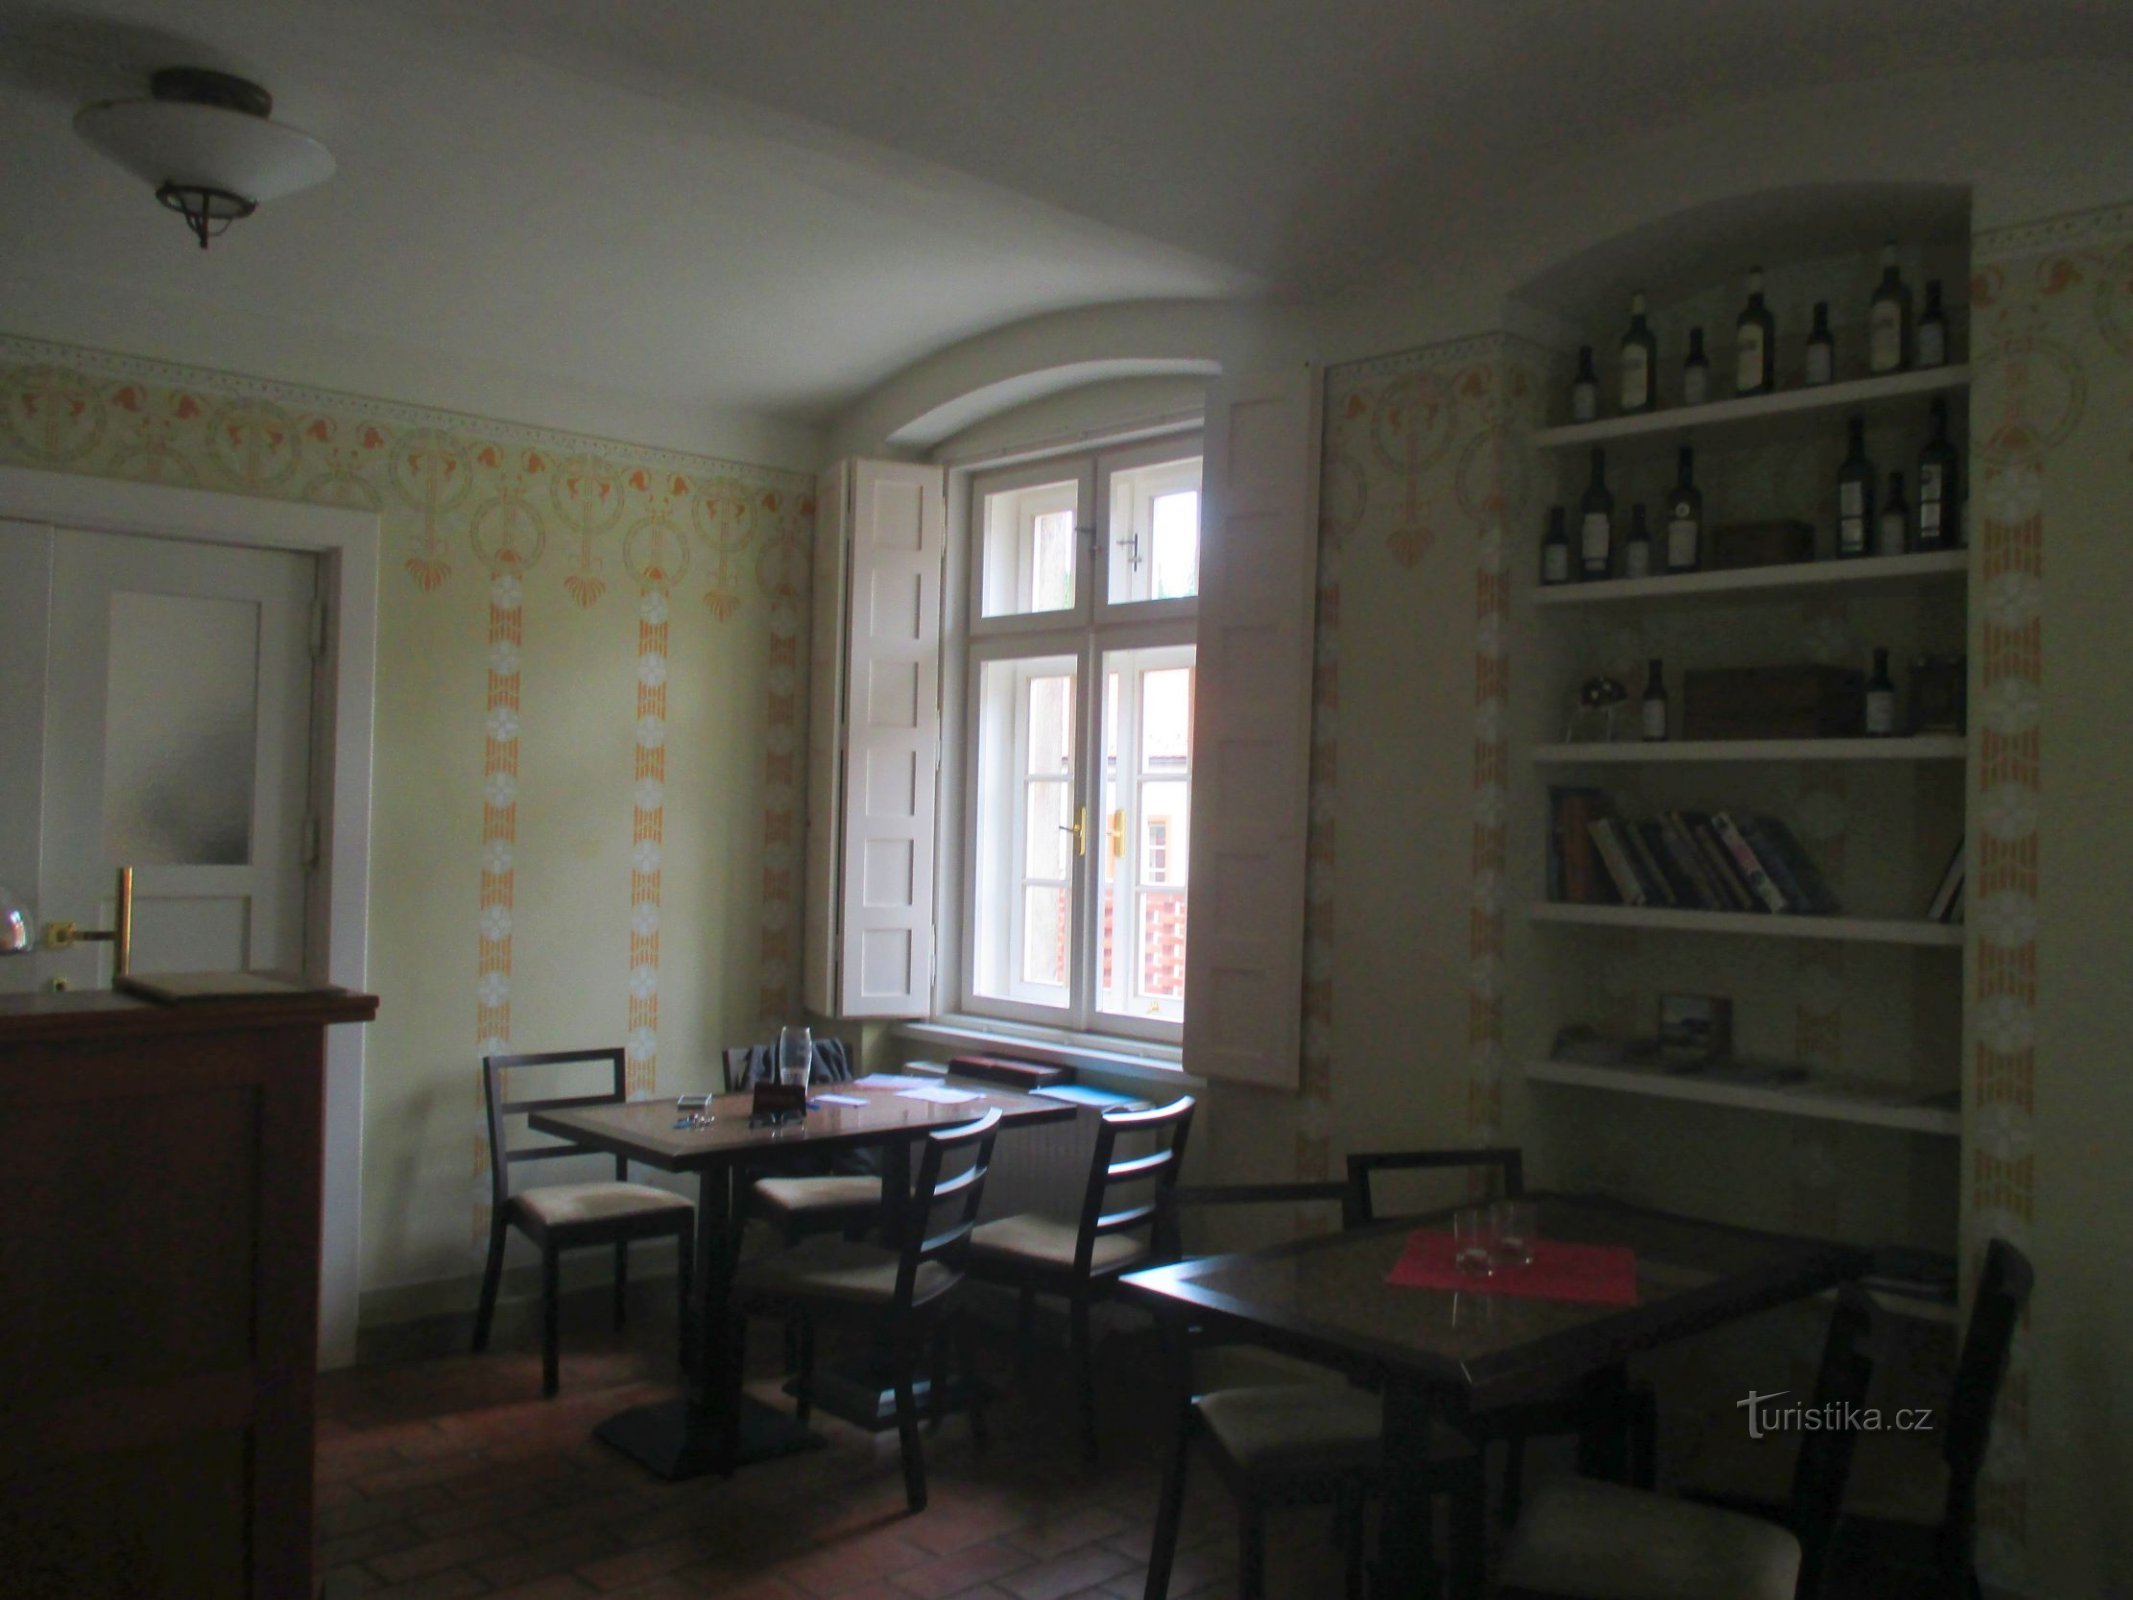 O Synagogue Café está localizado no apartamento de um antigo rabino com um interior fielmente restaurado.